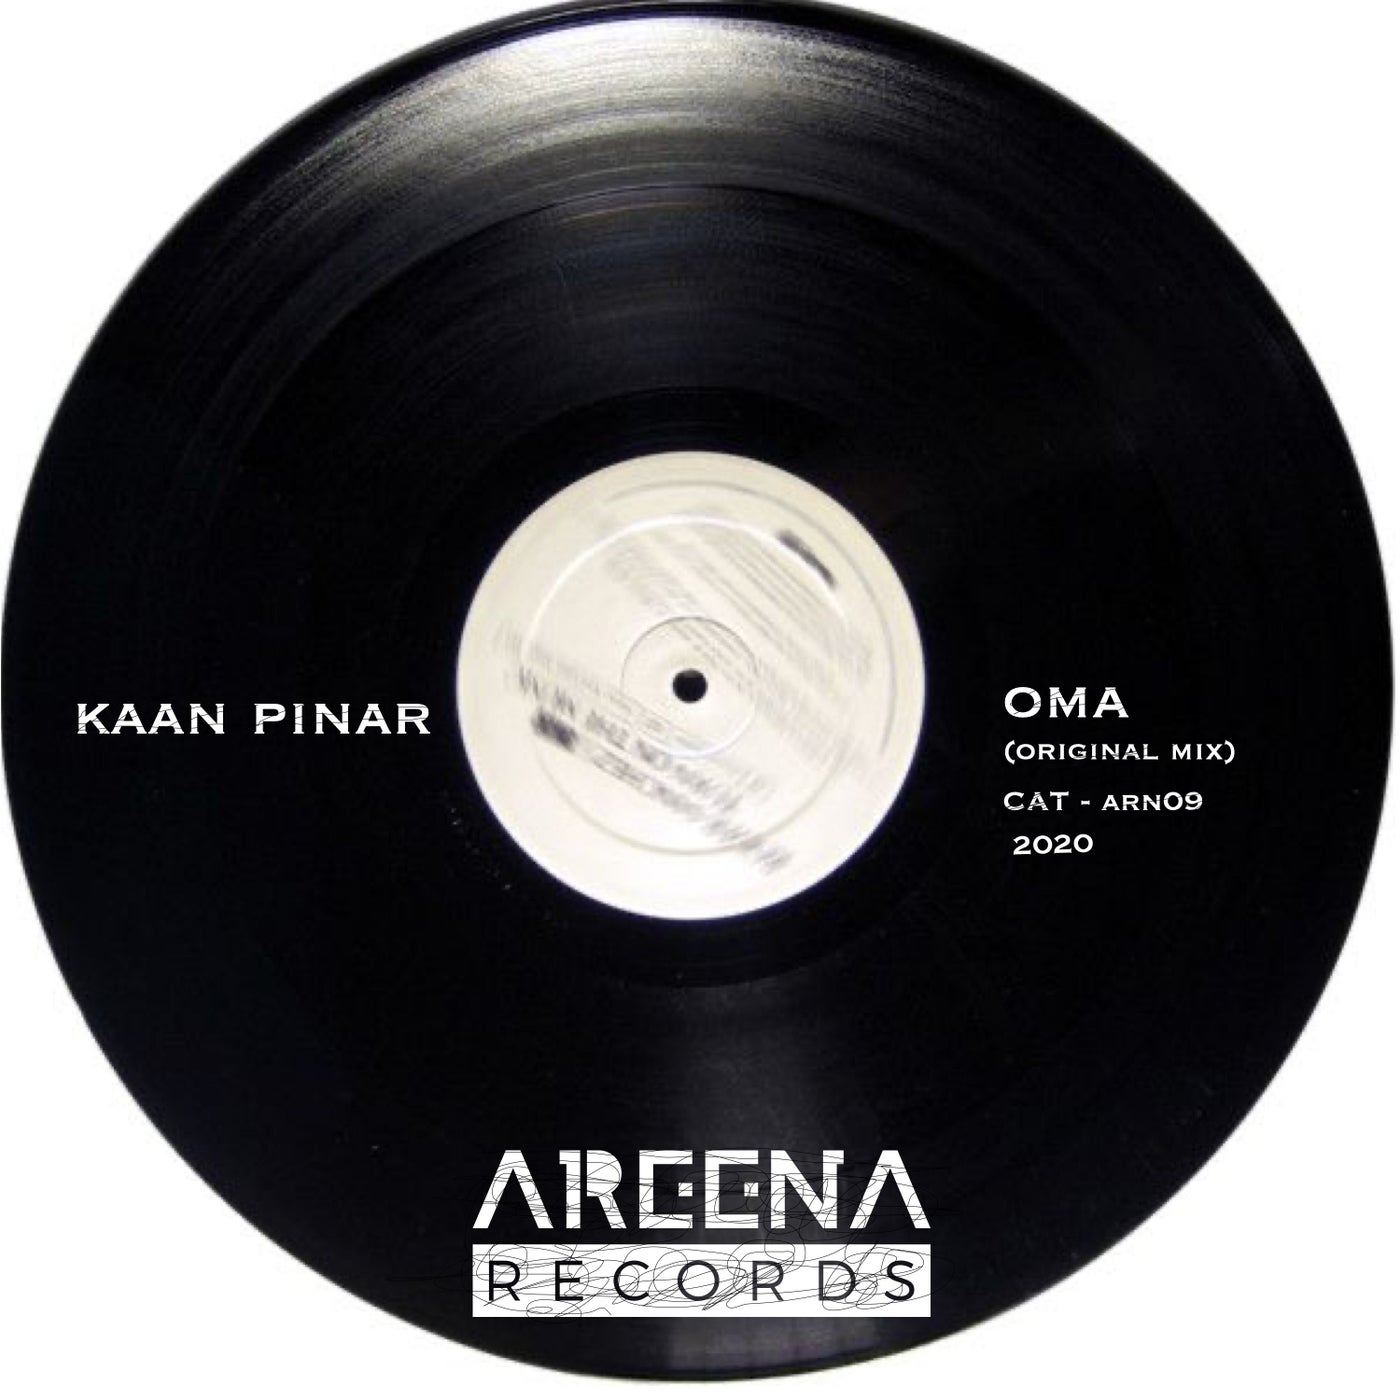 OMA (Original Mix)